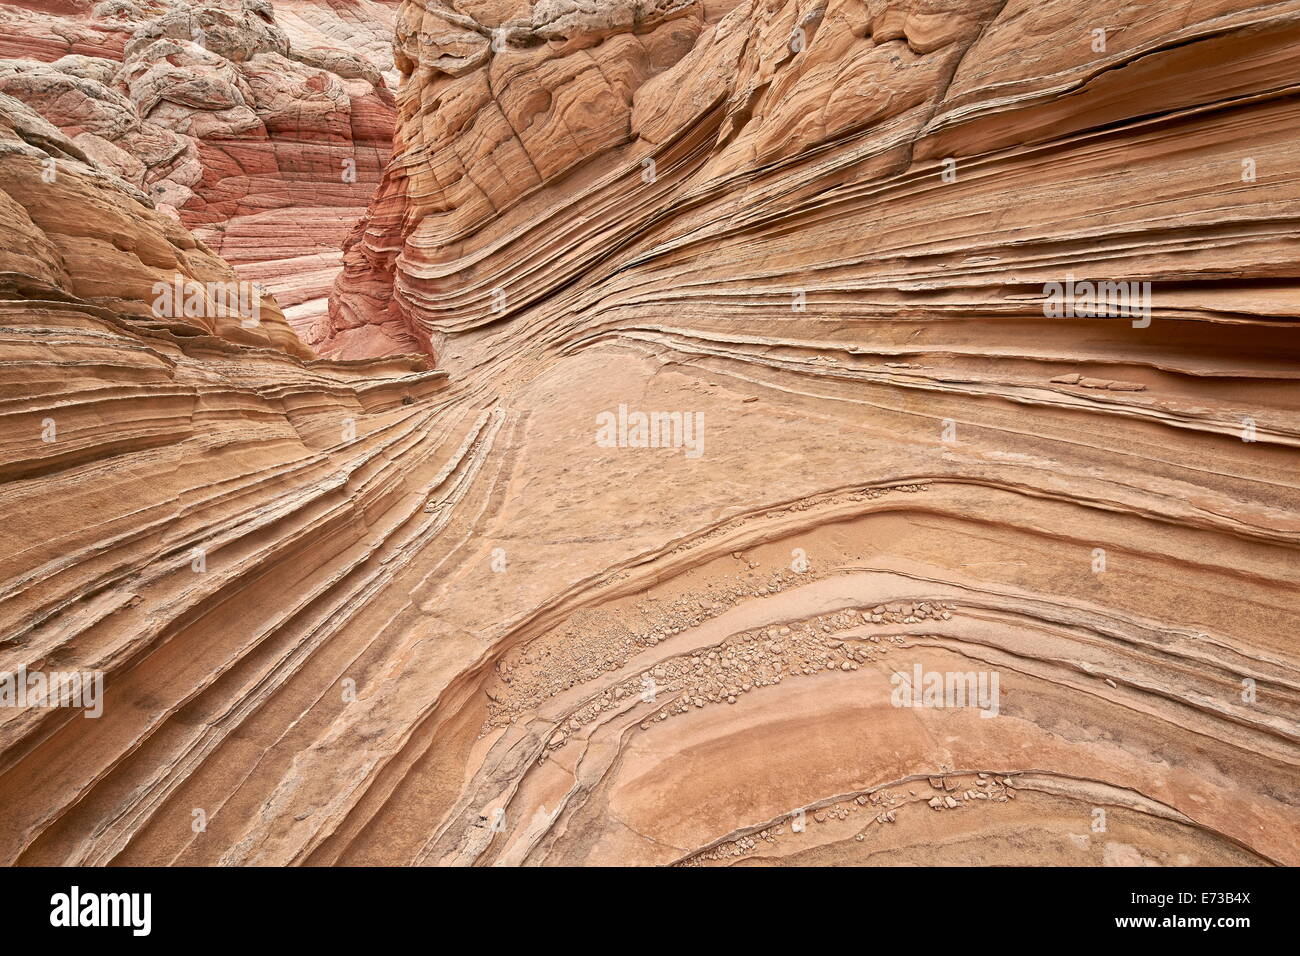 Couches de grès beige, blanc Pocket, Vermilion Cliffs National Monument, Arizona, États-Unis d'Amérique, Amérique du Nord Banque D'Images